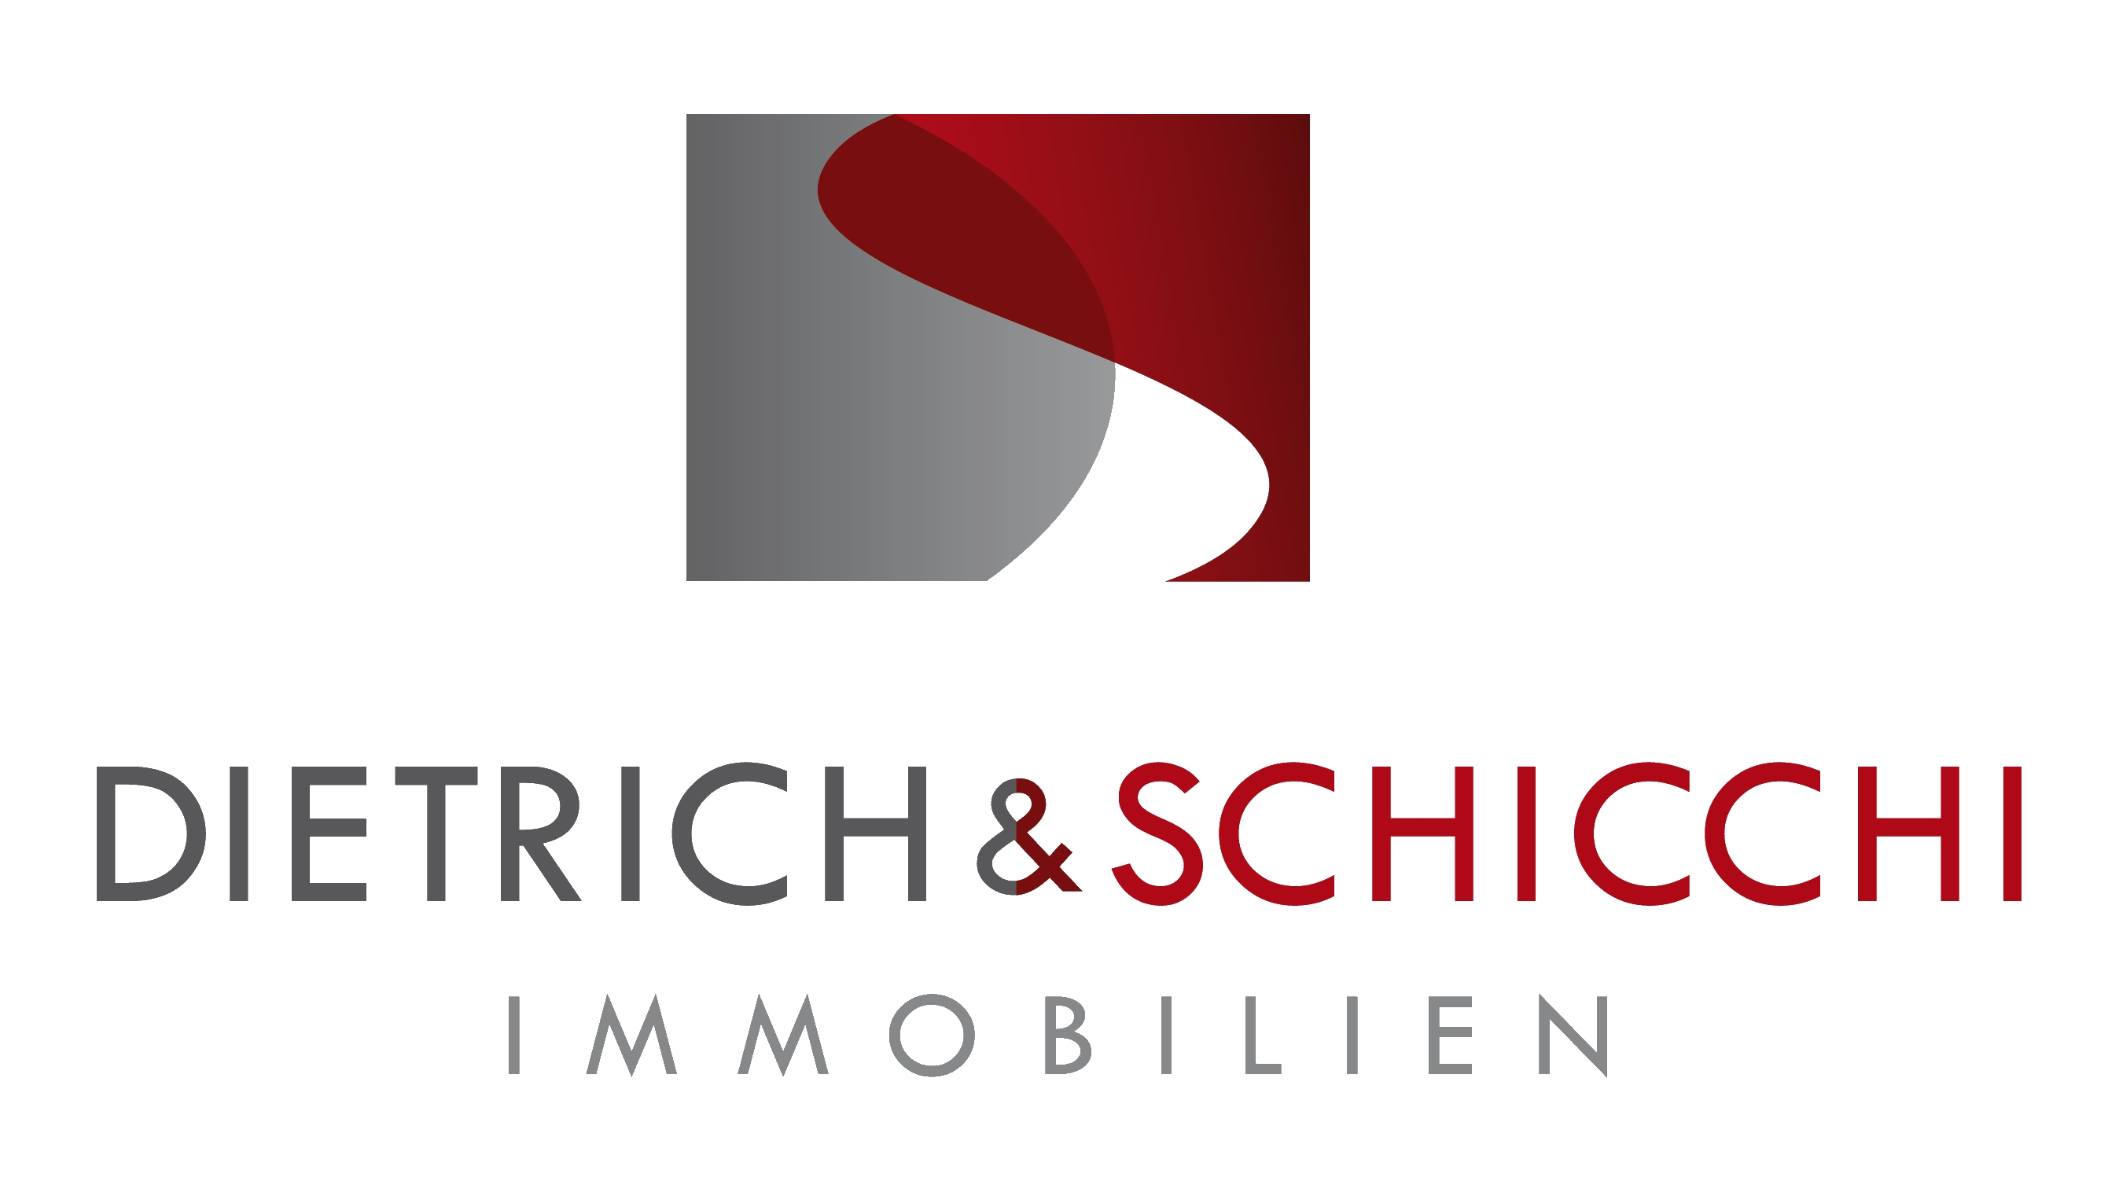 Bilder Dietrich & Schicchi Immobilien GbR